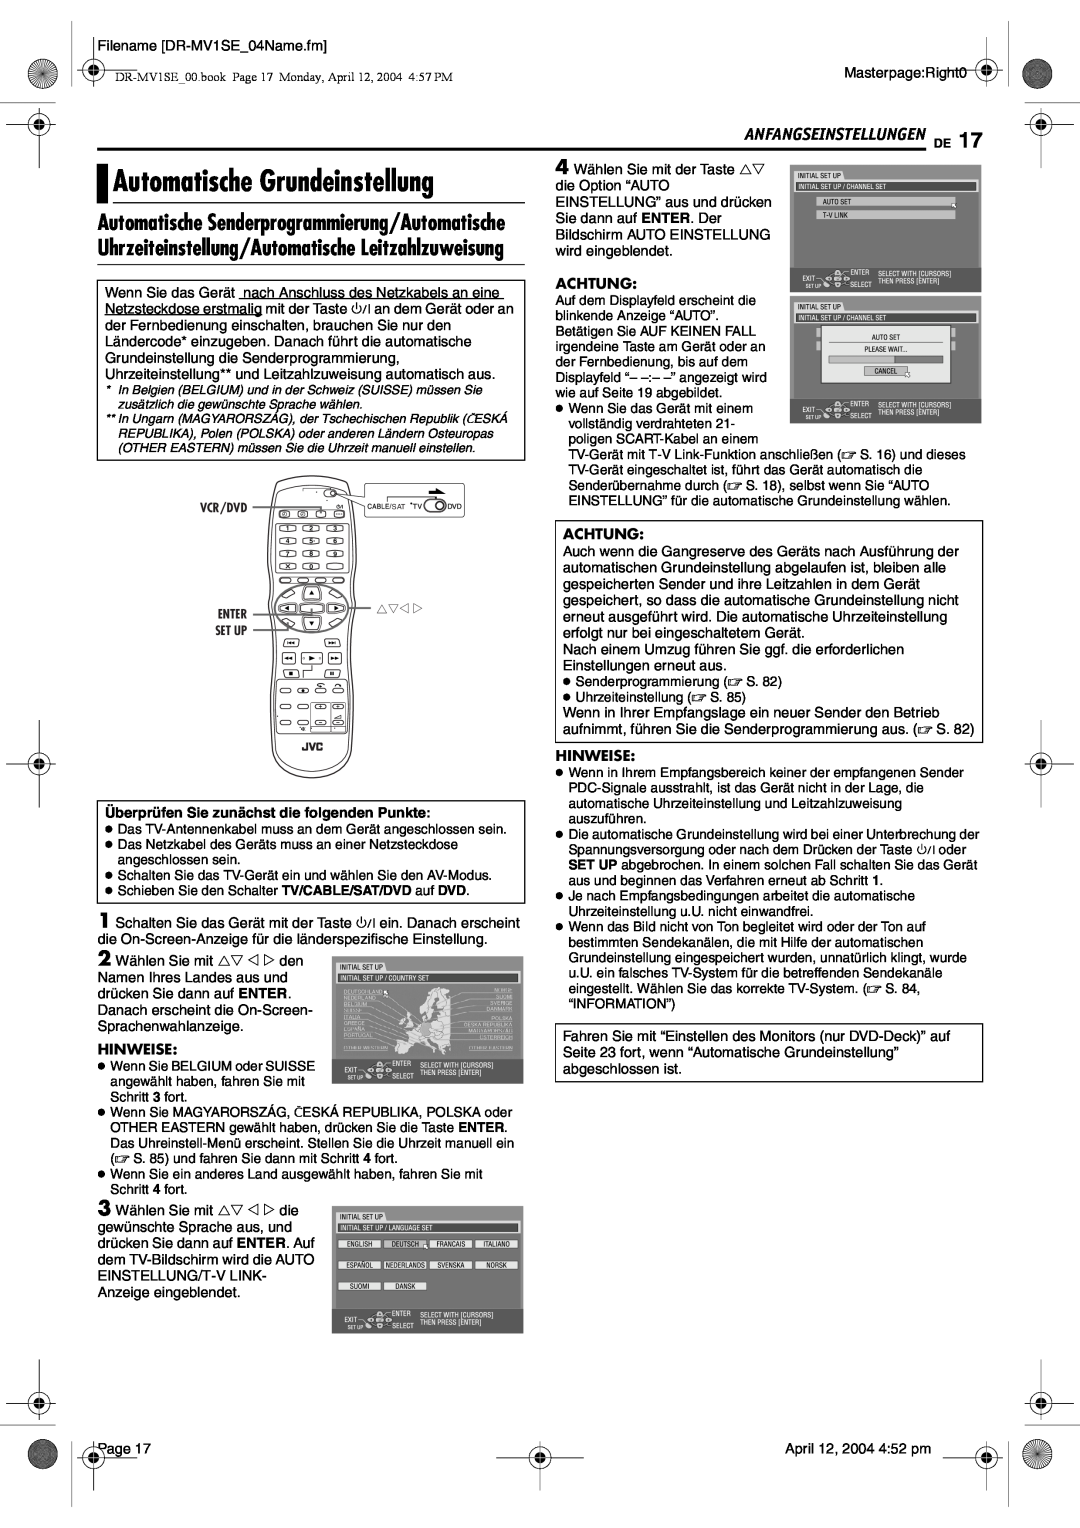 JVC DR-MV1S manual Automatische Grundeinstellung, Anfangseinstellungen De, Automatische Senderprogrammierung/Automatische 